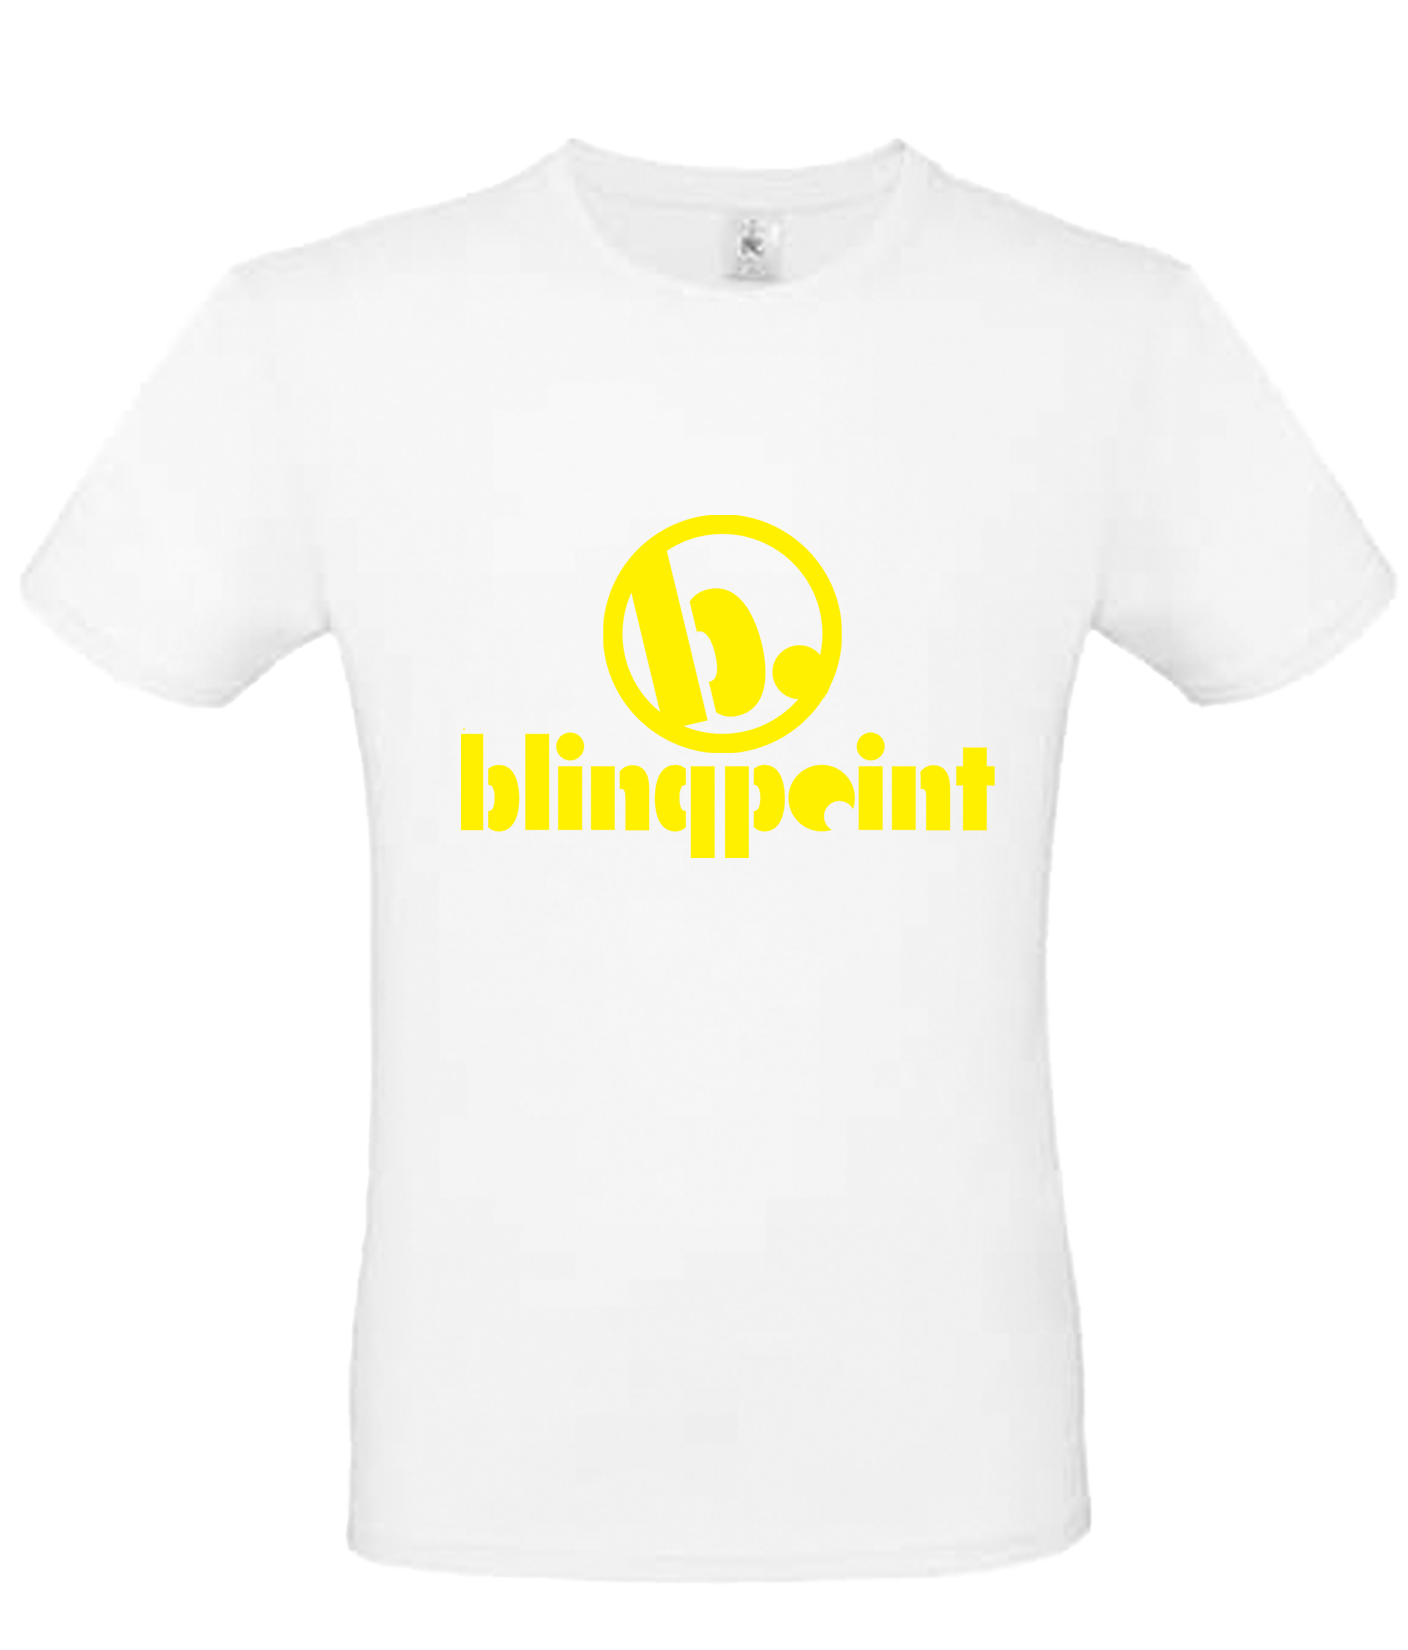 Blingpoint - Tshirt Schriftzug